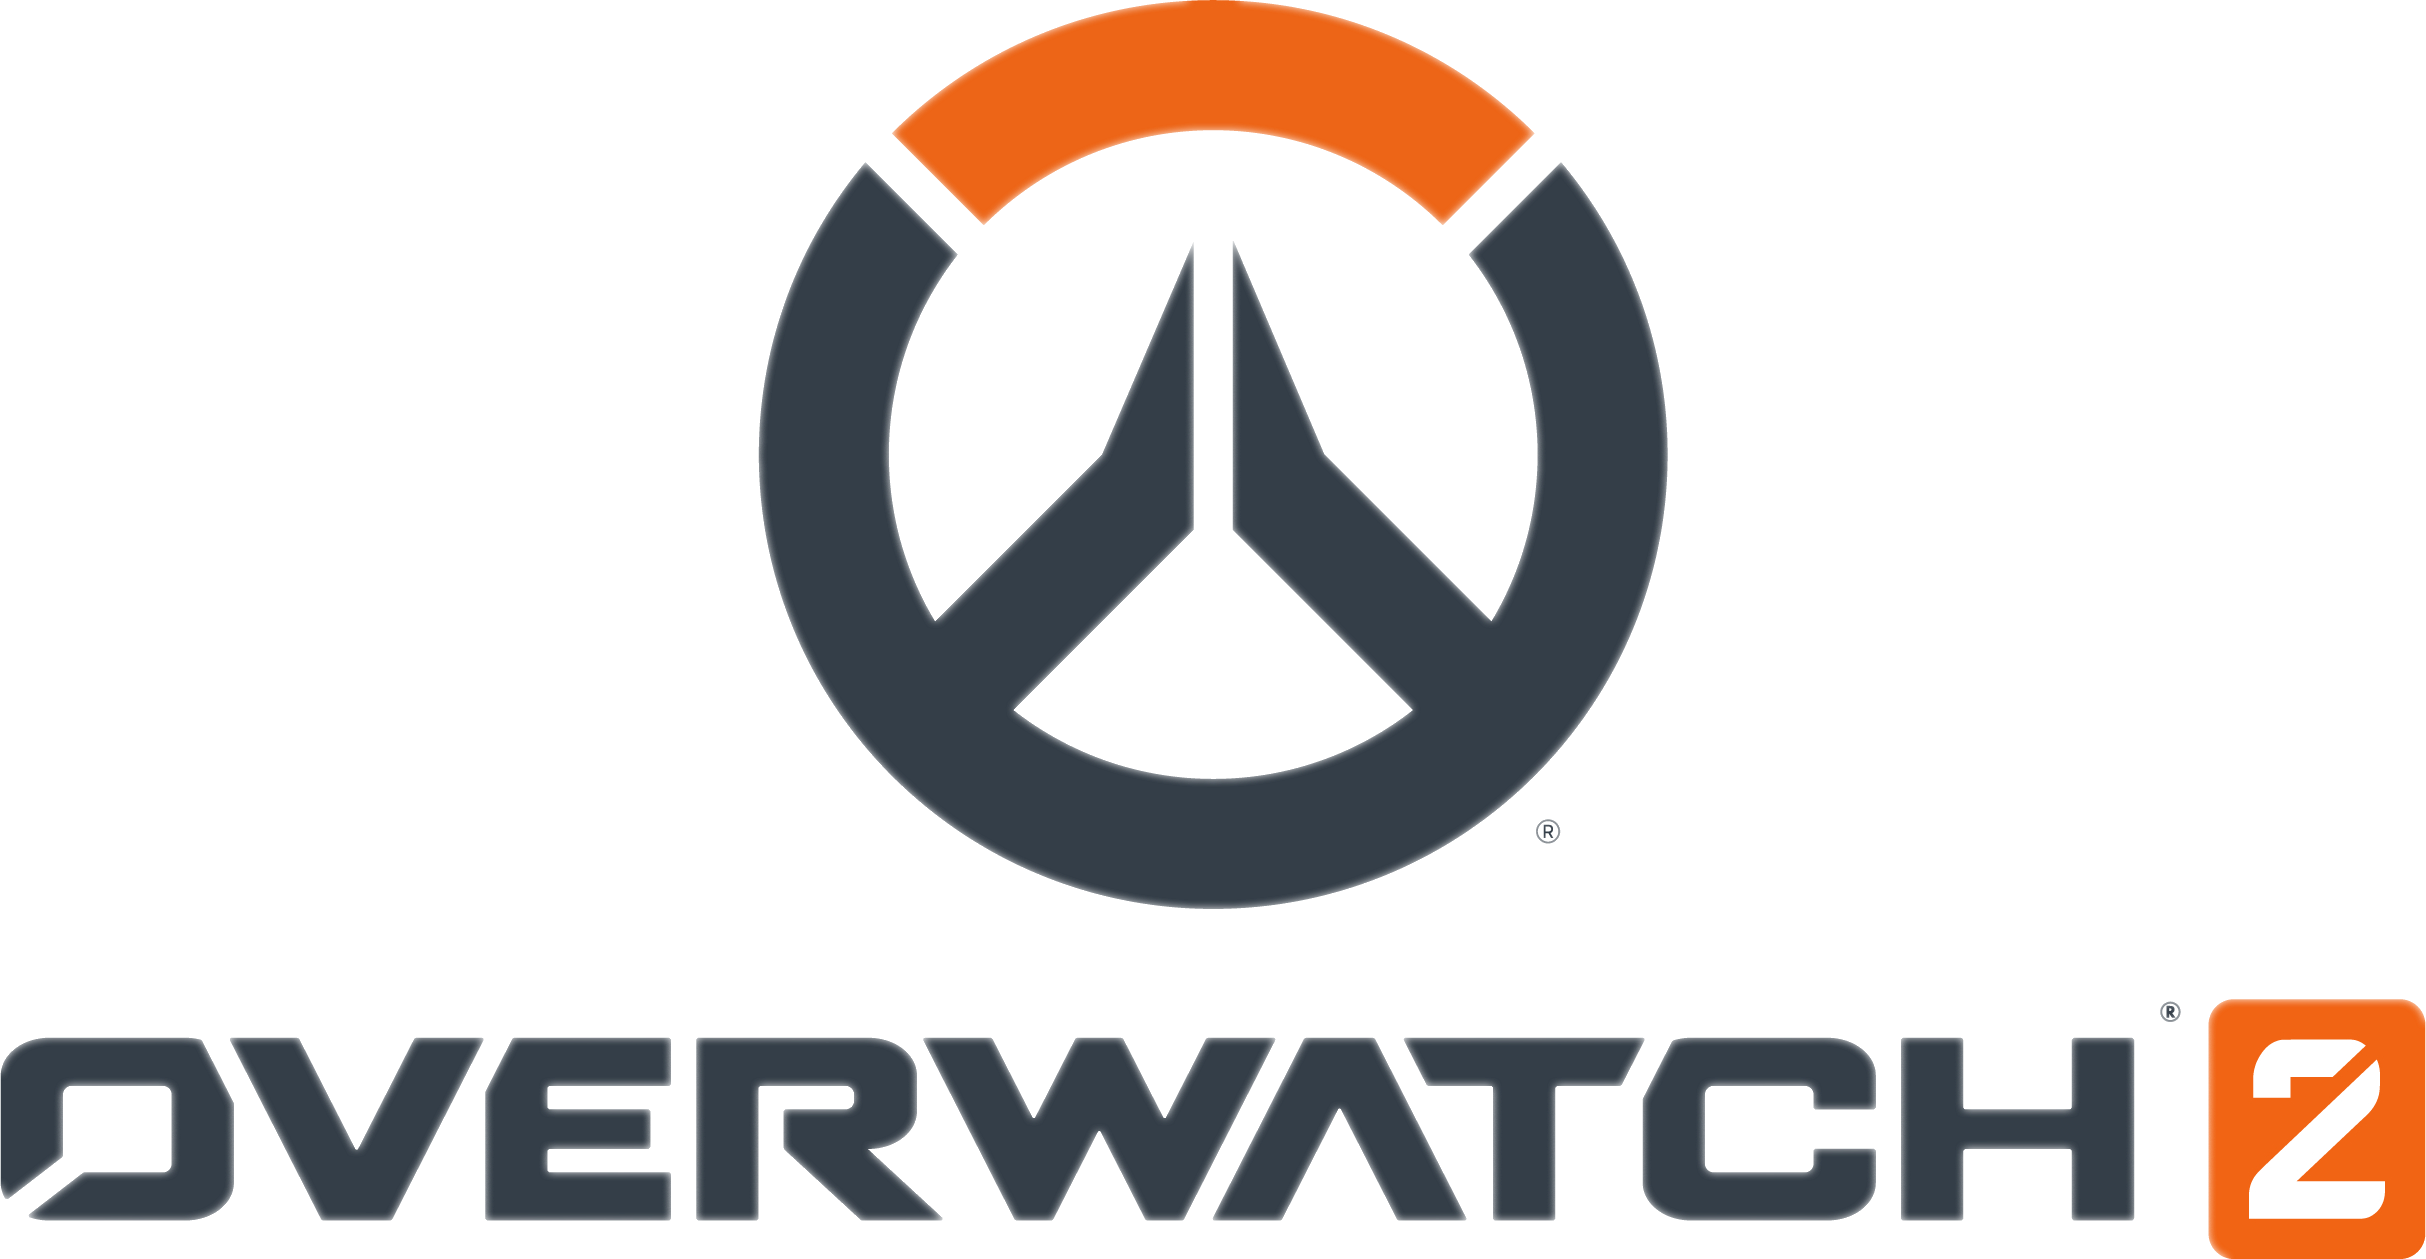 Overwatch2 Queue Simulator